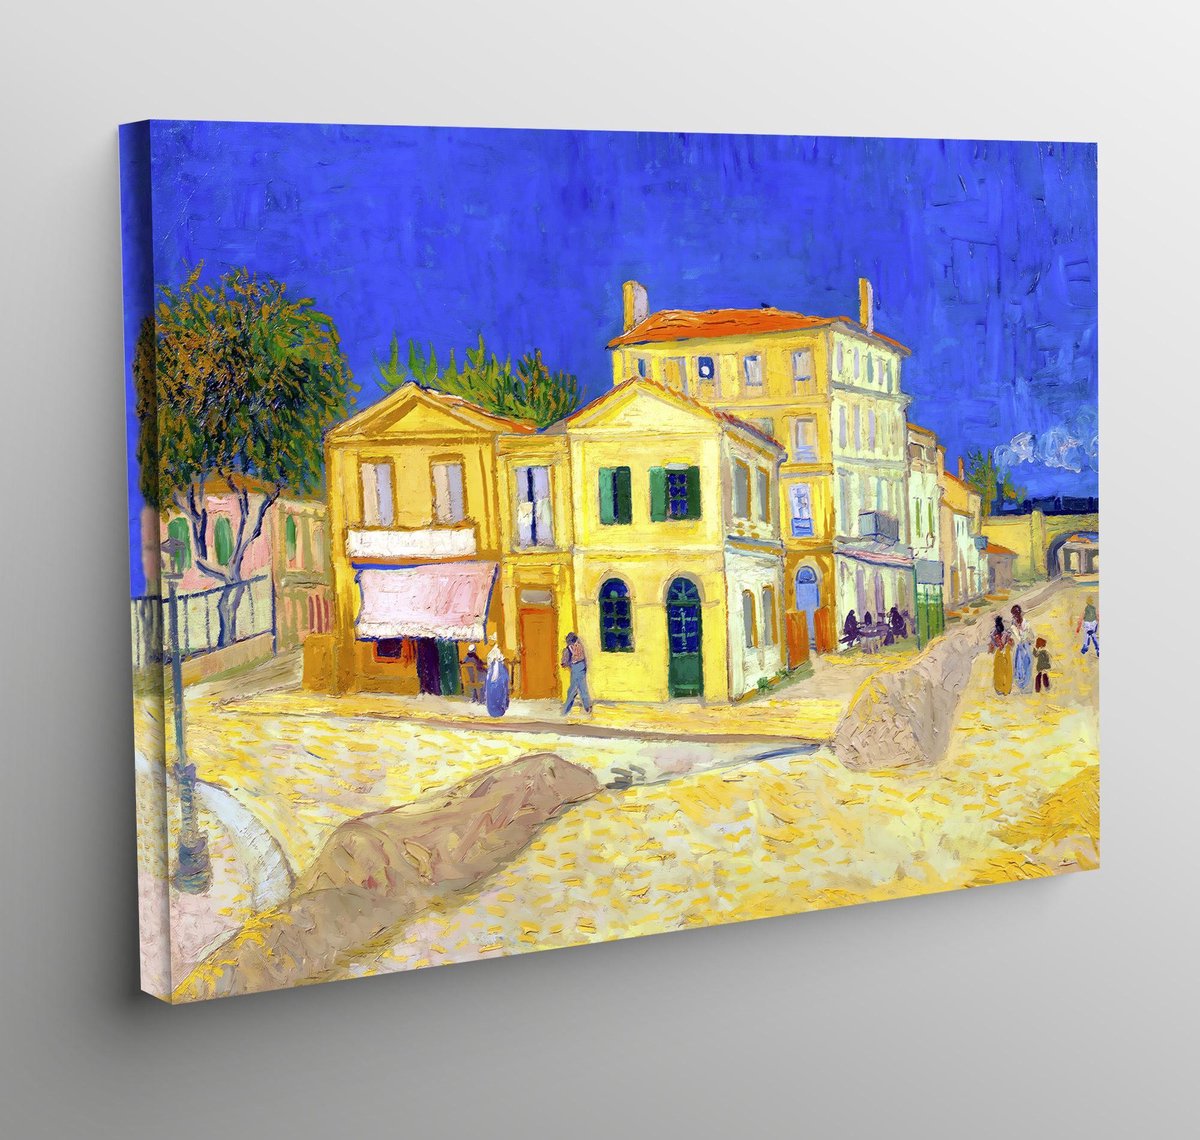 Alstublieft vandaag terras Canvas het gele huis - Vincent van Gogh - 70x50cm | bol.com